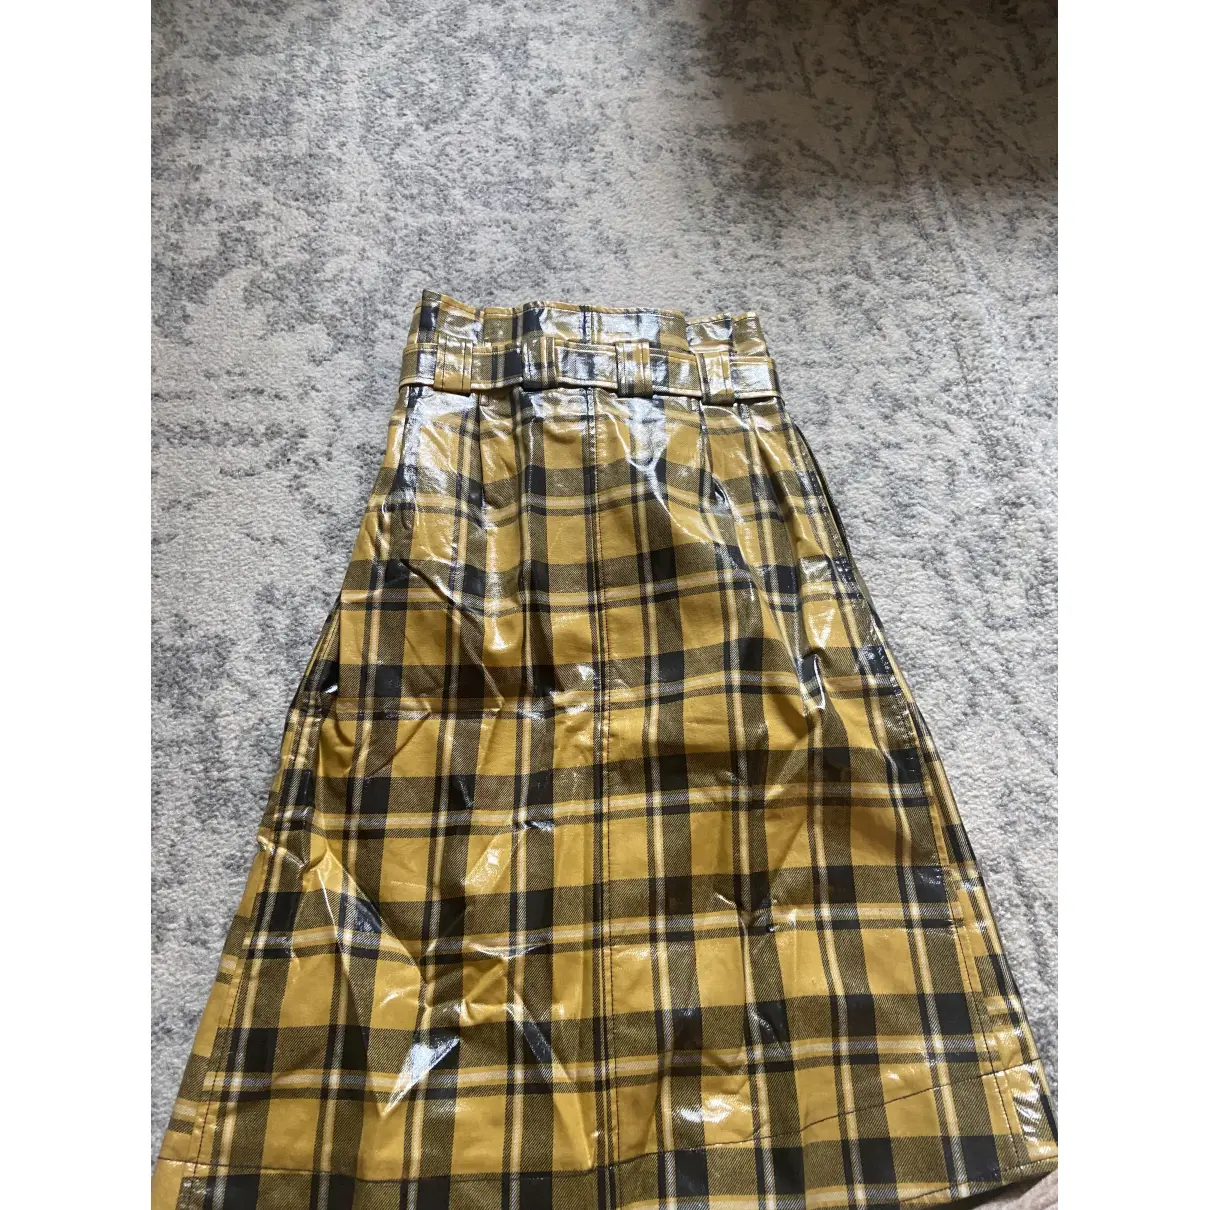 Buy Ganni Fall Winter 2019 mid-length skirt online